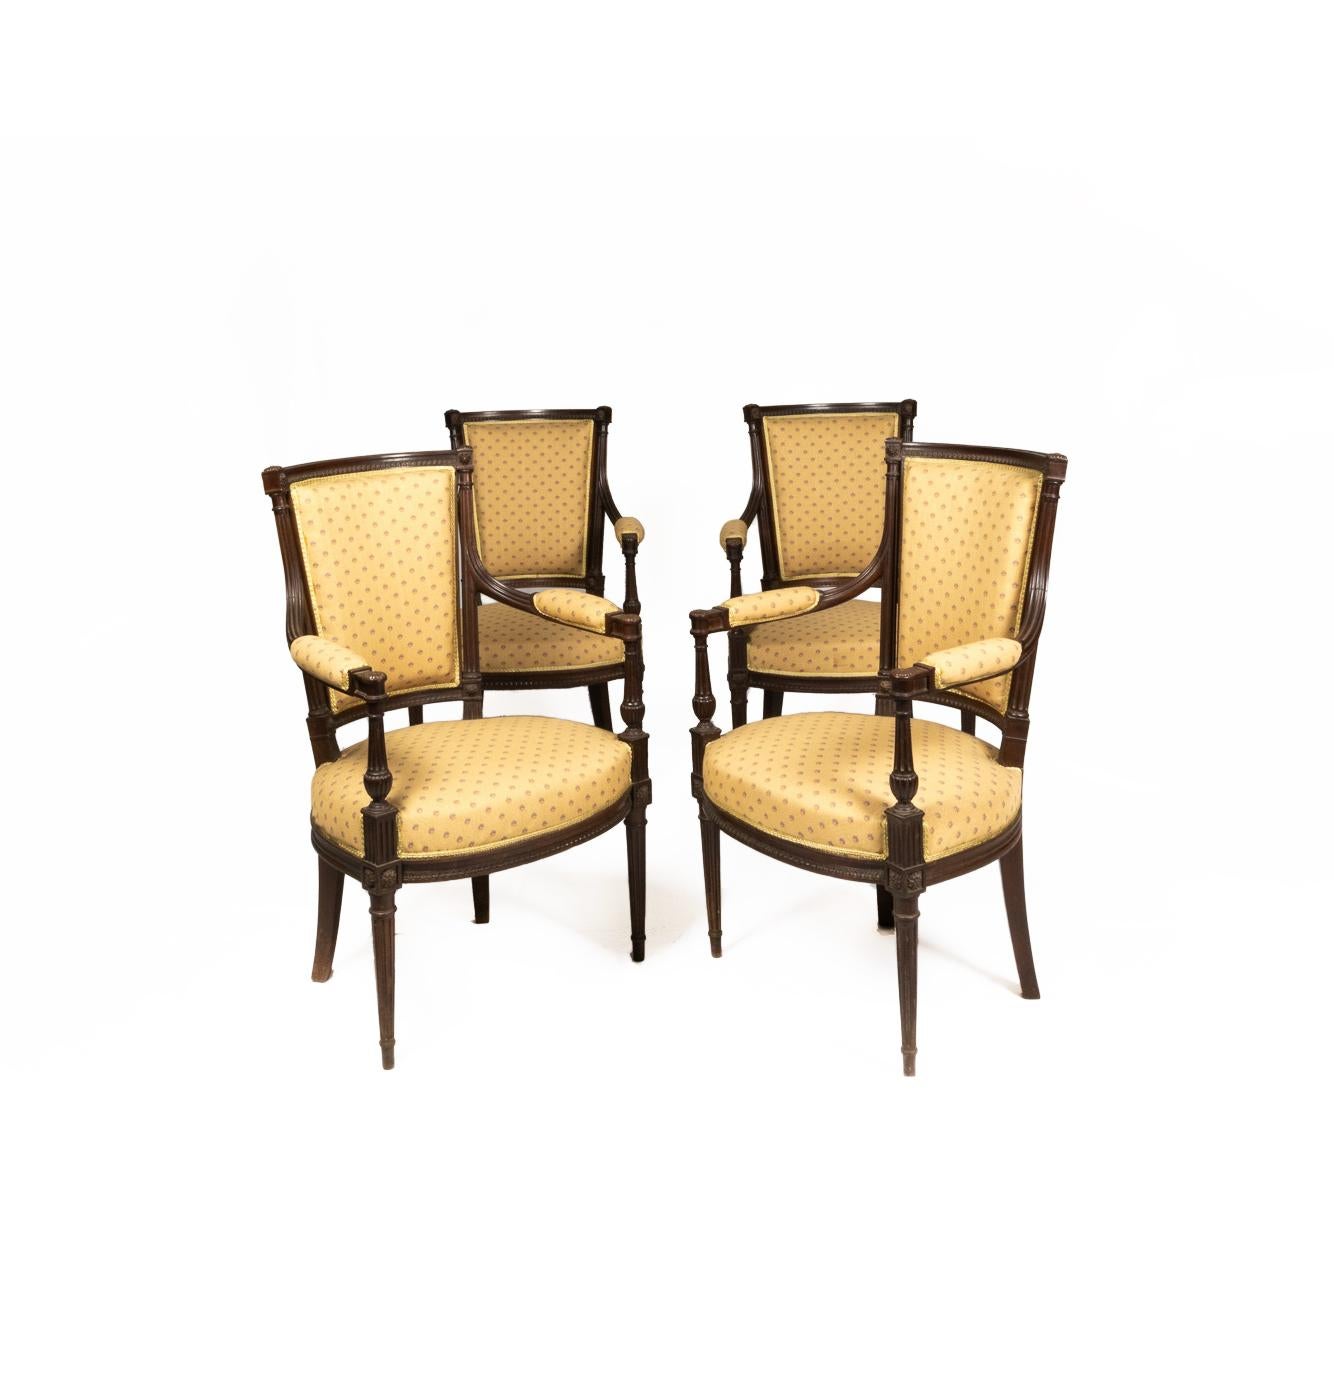 Salonsuite im Stil Louis XVI: Eine fünfteilige Garnitur mit vier Sesseln und einem Kanapee aus kubanischem Mahagoni im Stil der 